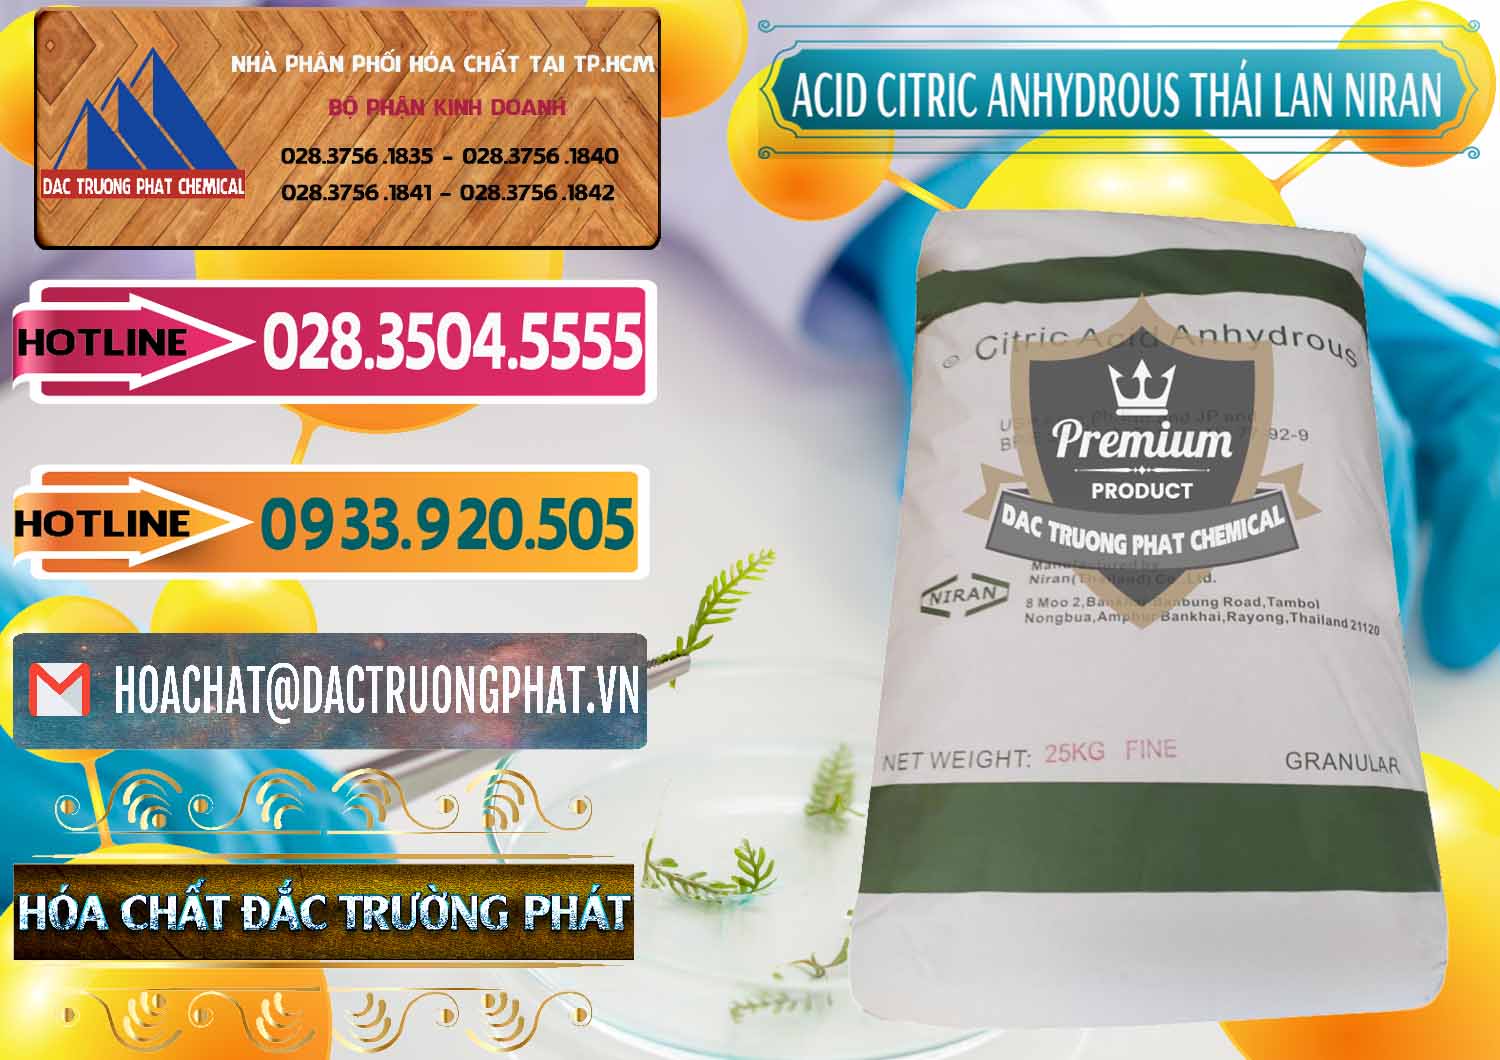 Đơn vị chuyên phân phối & bán Acid Citric - Axit Citric Anhydrous - Thái Lan Niran - 0231 - Cty chuyên cung cấp và bán hóa chất tại TP.HCM - dactruongphat.vn